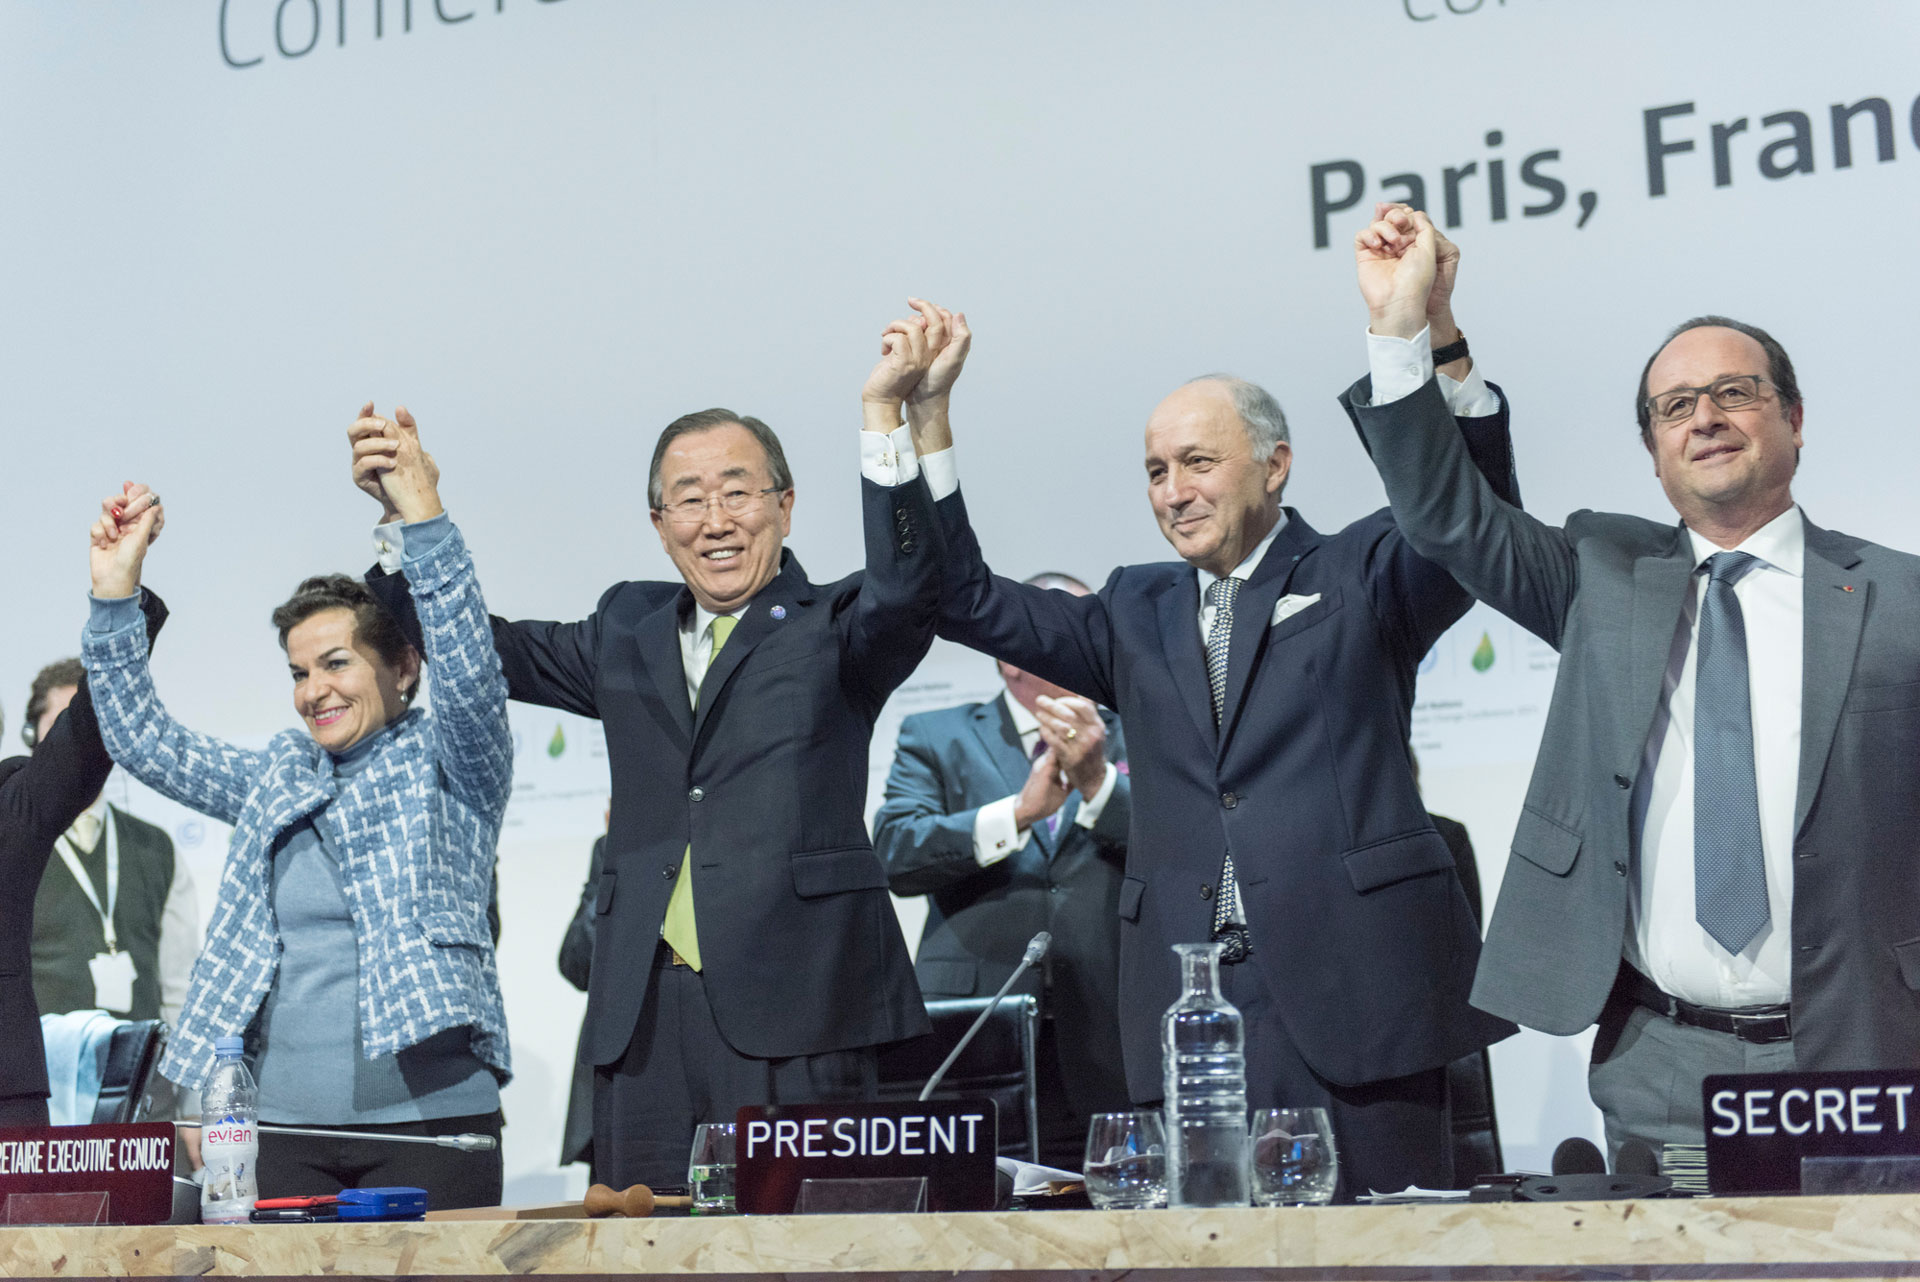 <p><sub>Nekdanji generalni sekretar Ban Ki-moon (drugi levo), Christiana Figueres (levo), izvršna sekretarka Okvirne konvencije ZN o spremembi podnebja (UNFCCC), Laurent Fabius (drugi desno), francoski minister za zunanje zadeve in predsednik Konference ZN o podnebnih spremembah v Parizu (COP21), in François Hollande (desno), francoski predsednik, praznujejo po zgodovinskem sprejetju Pariškega sporazuma o podnebnih spremembah.</sub></p>